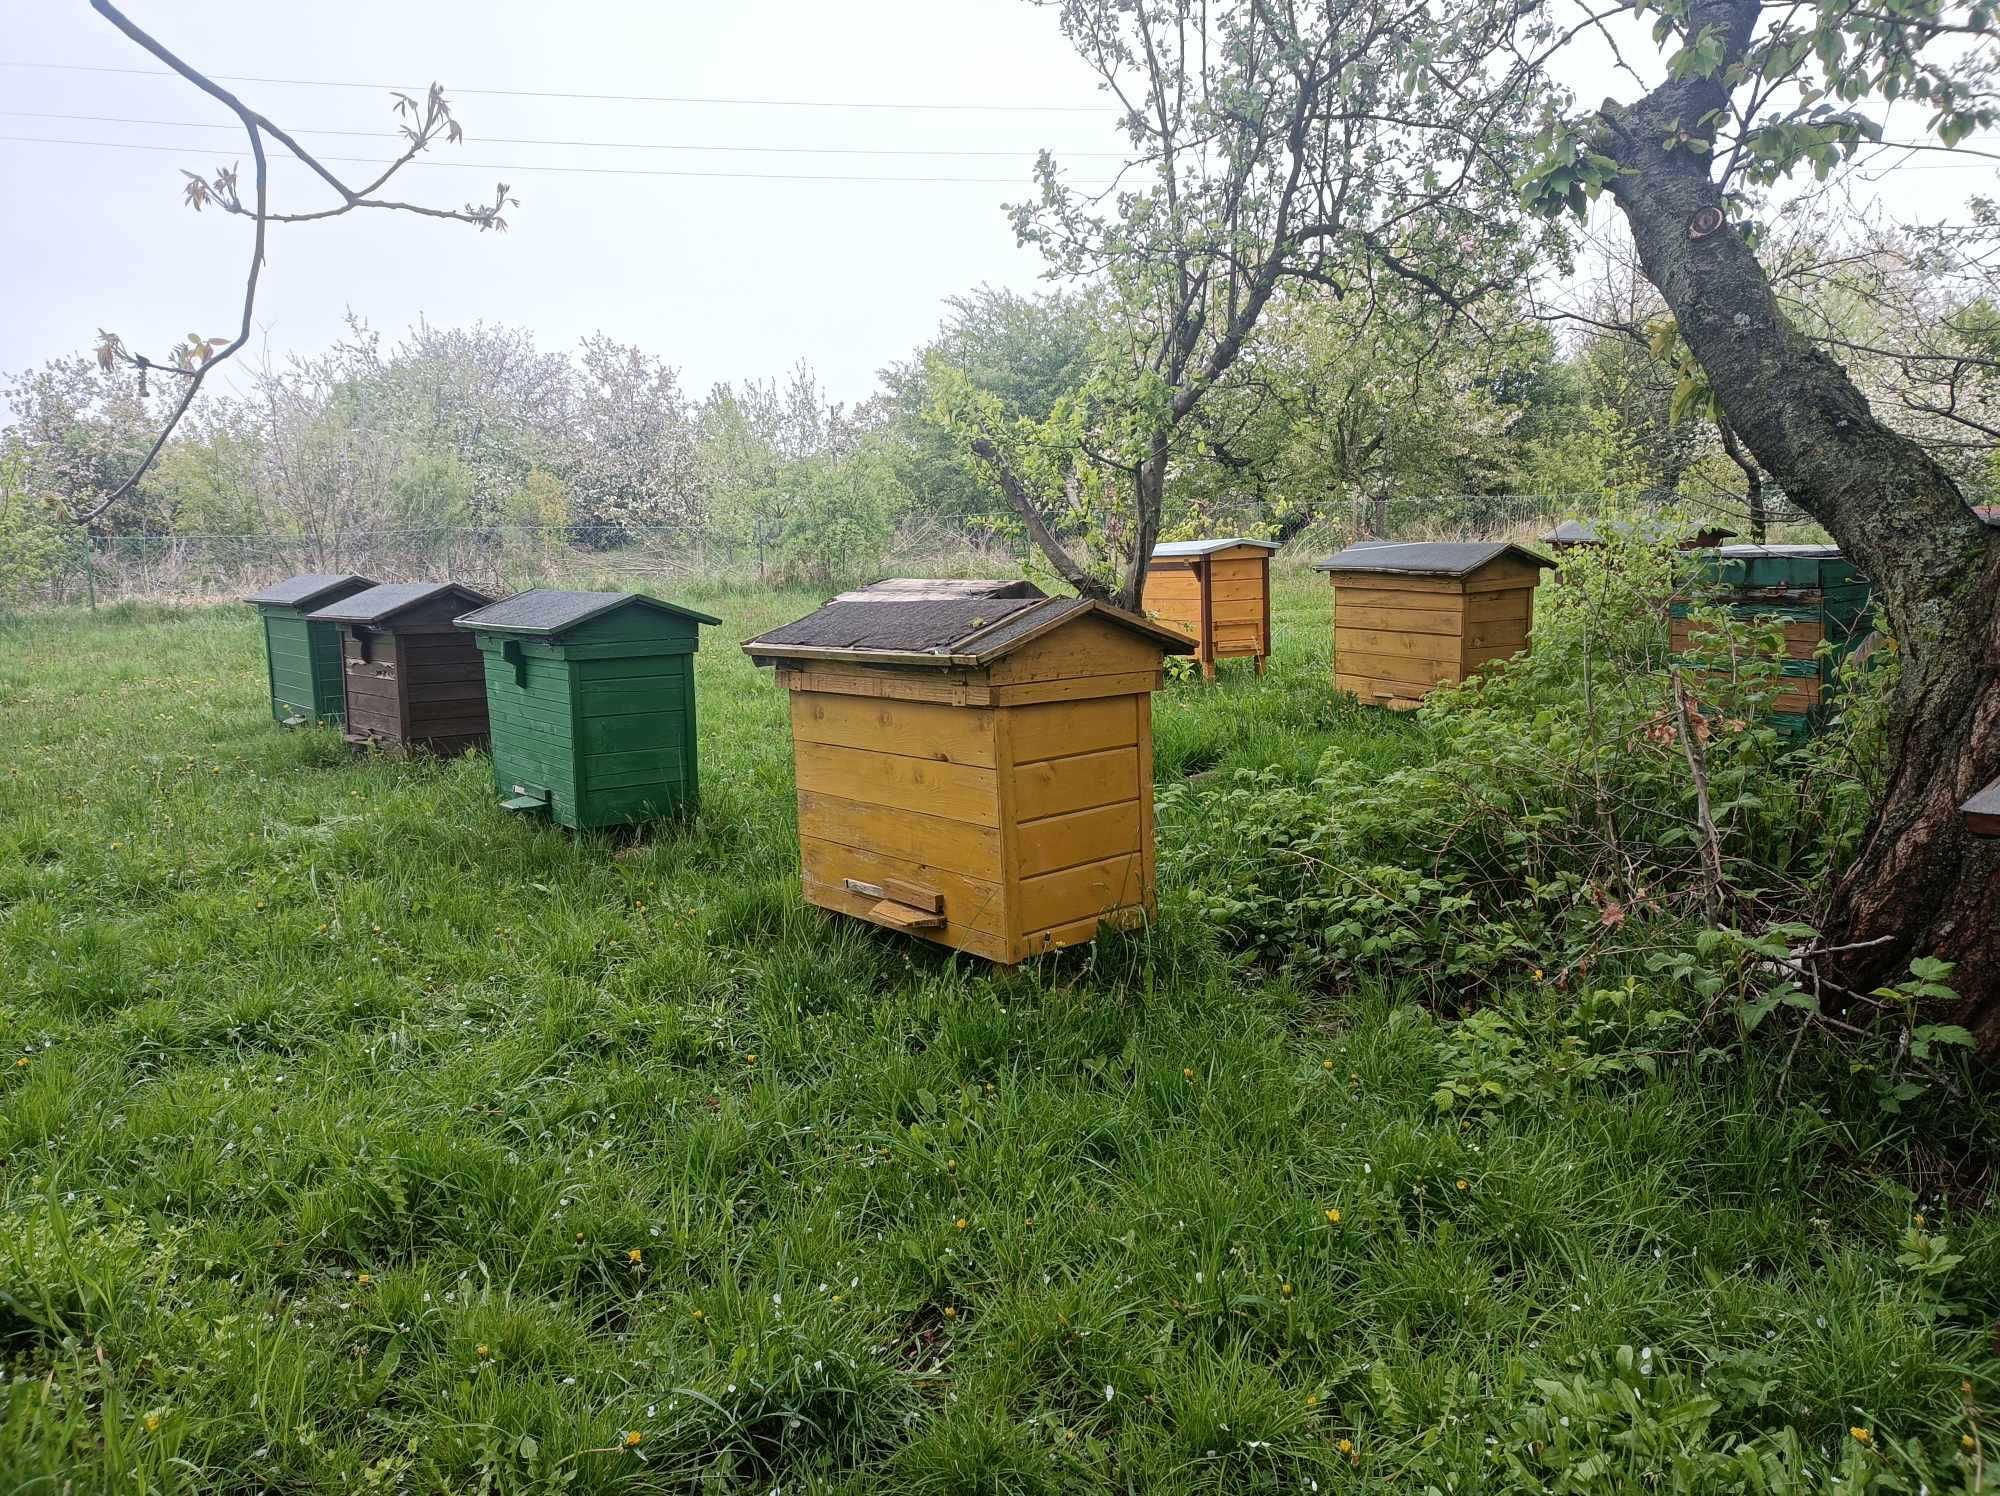 Ule warszawskie poszerzane z rodzinami pszczelimi